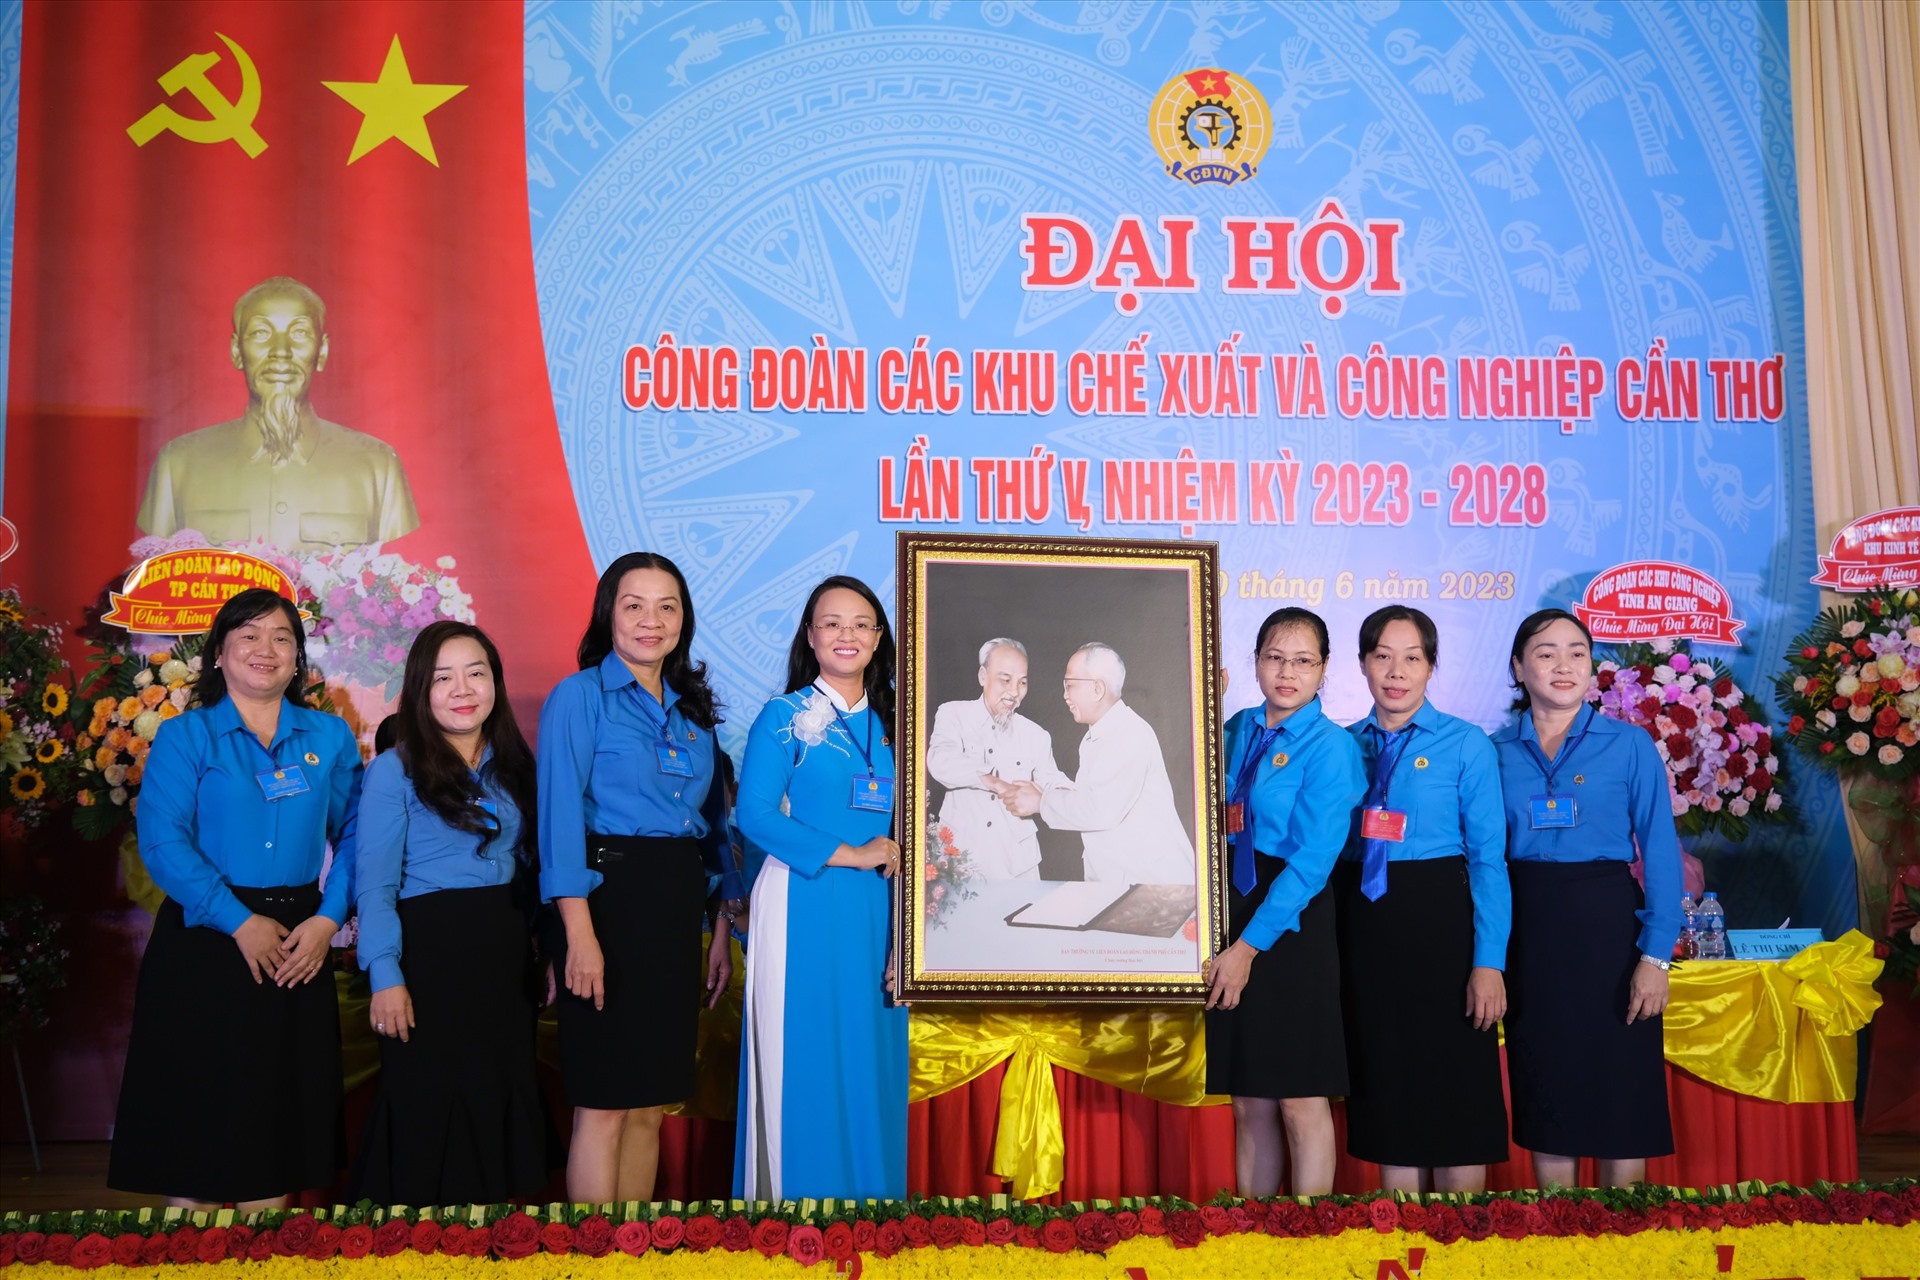 Lãnh đạo LĐLĐ TP Cần Thơ chúc mừng Đại hội Công đoàn Các khu công nghiệp nhiệm kỳ 2023-2028. Ảnh: Phong Linh